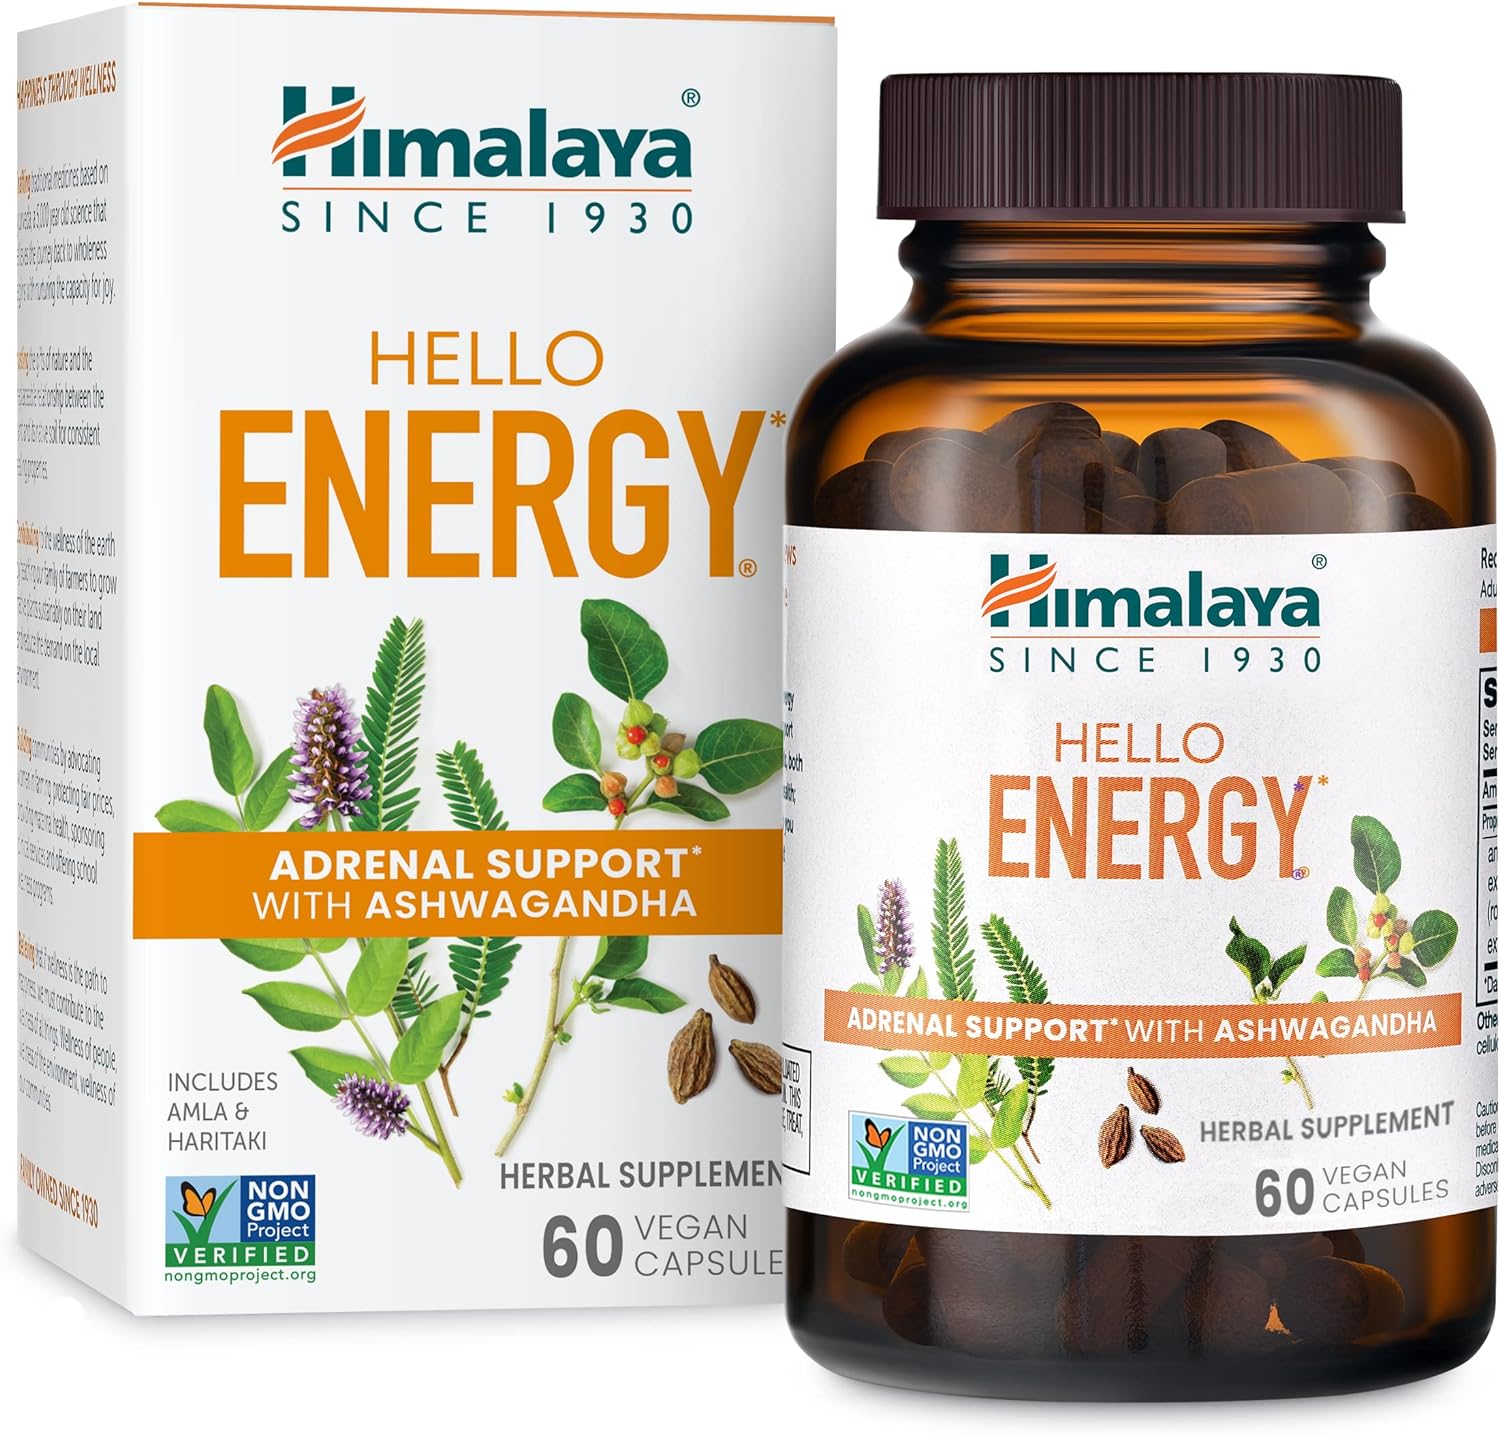 Himalaya Hello Energy Herbal Supplement with Ashwagandha, Amla, Harita